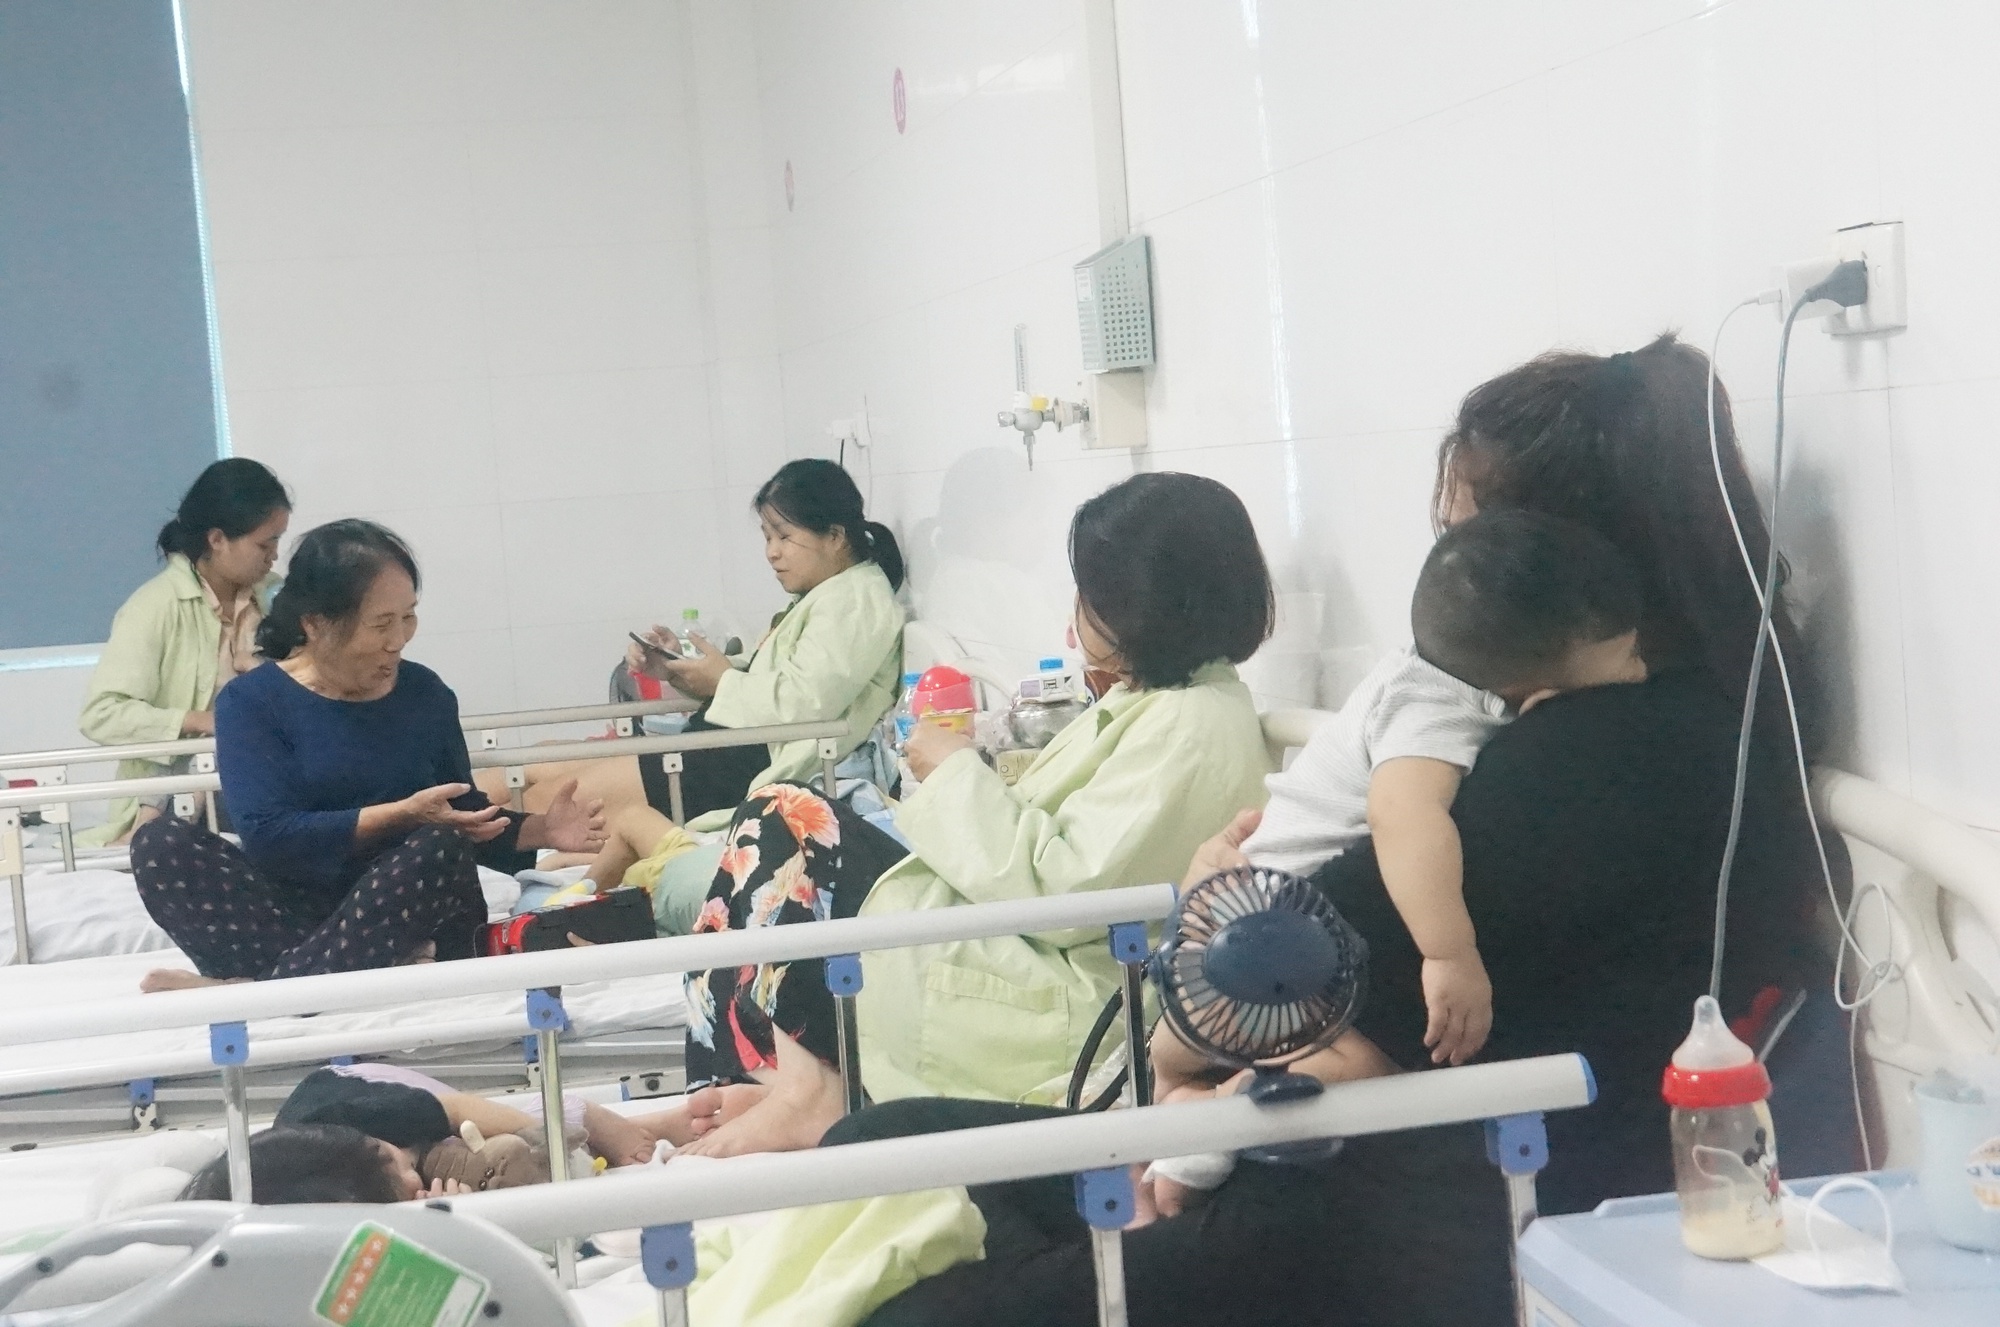 Hà Nội: Bệnh nhân nhi nhập viện tăng đột biến, bác sĩ khuyến cáo gì? - ảnh 2